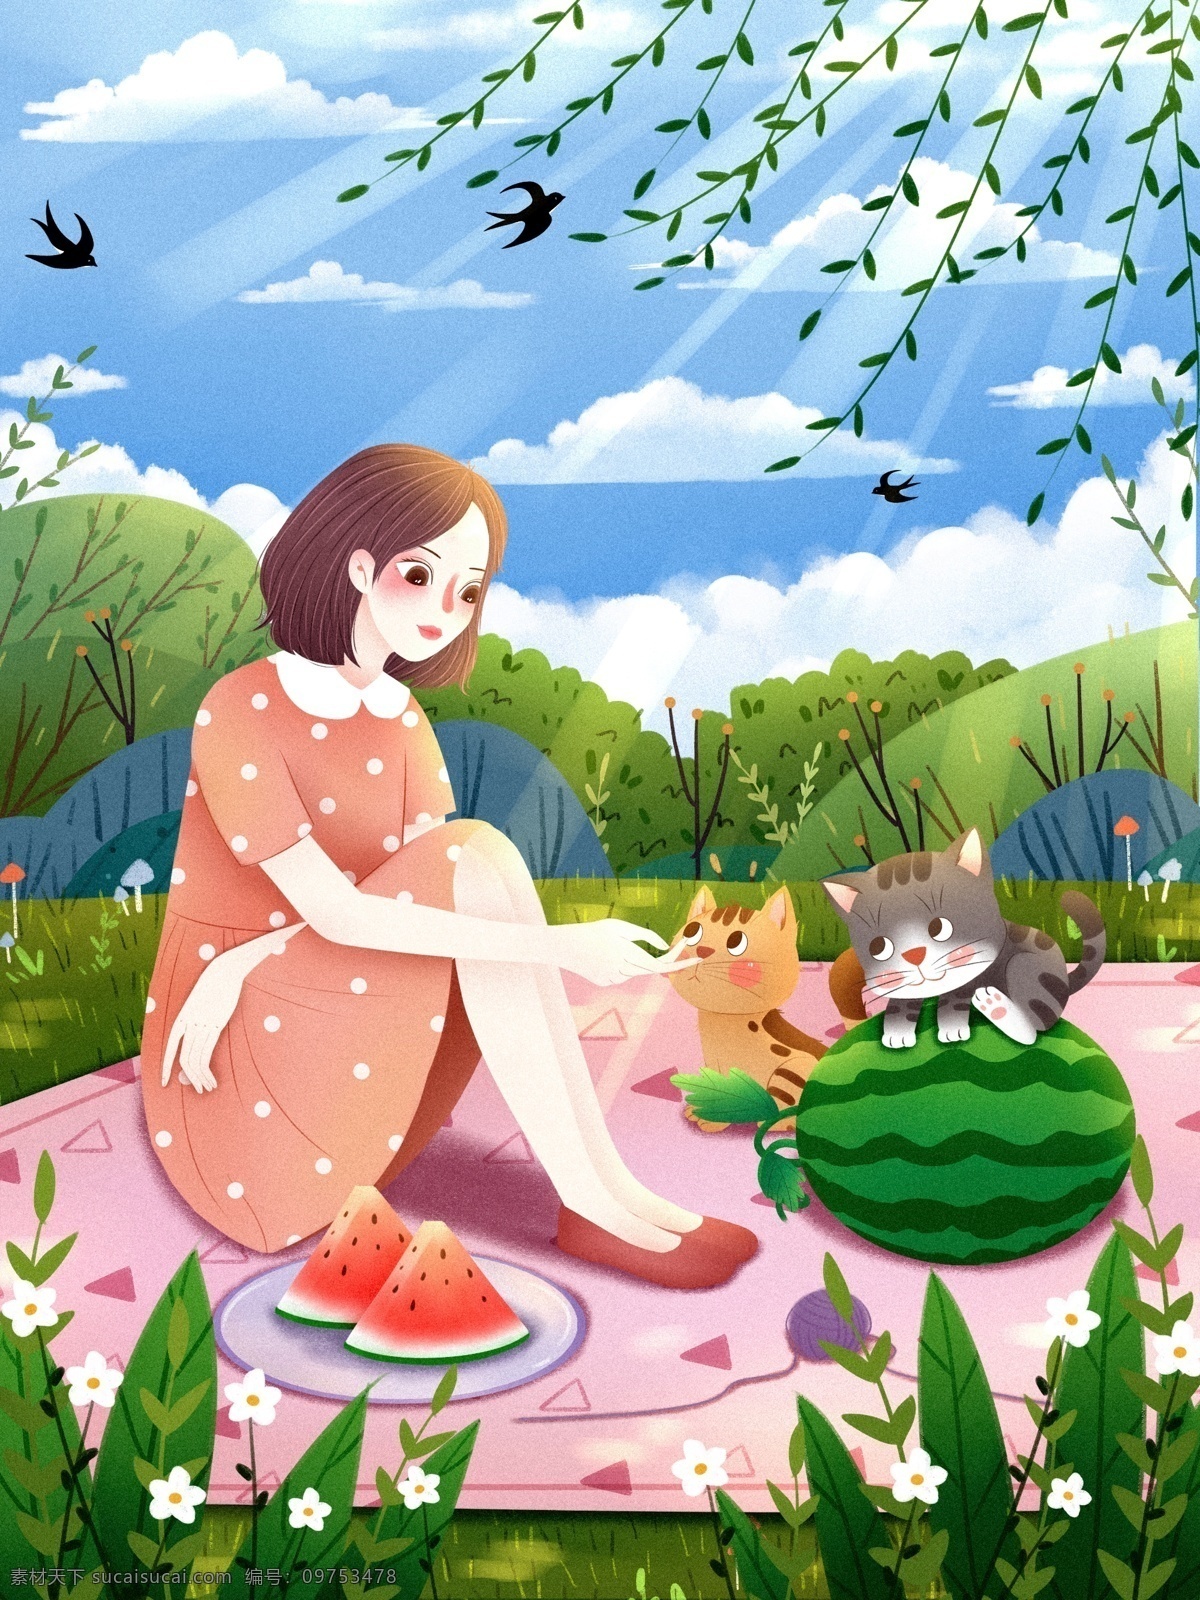 夏至 节气 夏天 夏日 插画 立夏 炎热 创意 可爱 治愈 温馨 猫咪 节气海报 卡通